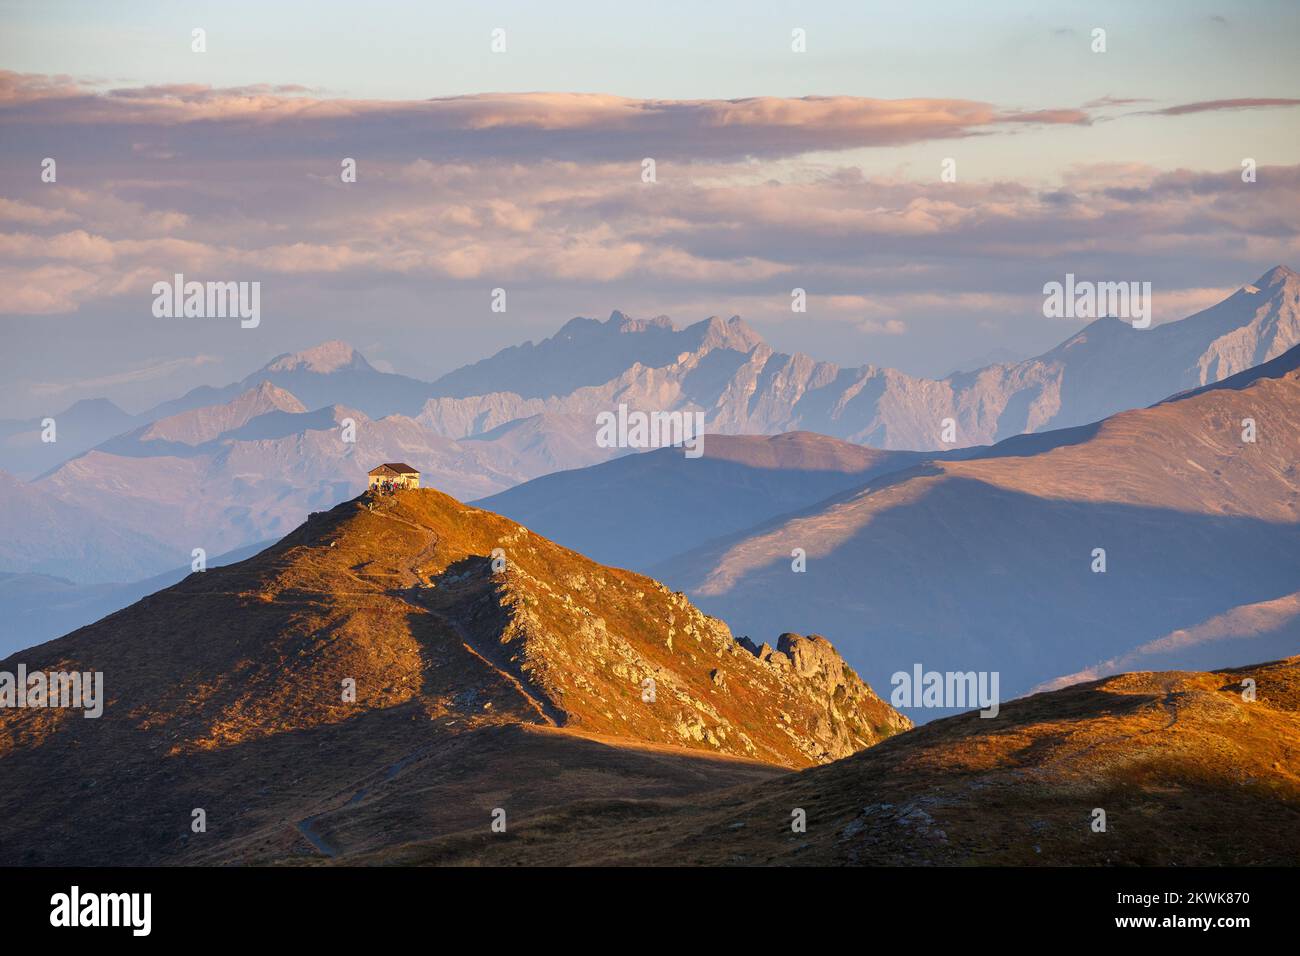 Luz del sol al amanecer. Monte Elmo (Helm) en el valle de Puster en el sur del Tirol, Alpi Carniche. Perfiles de montaña entre Austria e Italia. Foto de stock